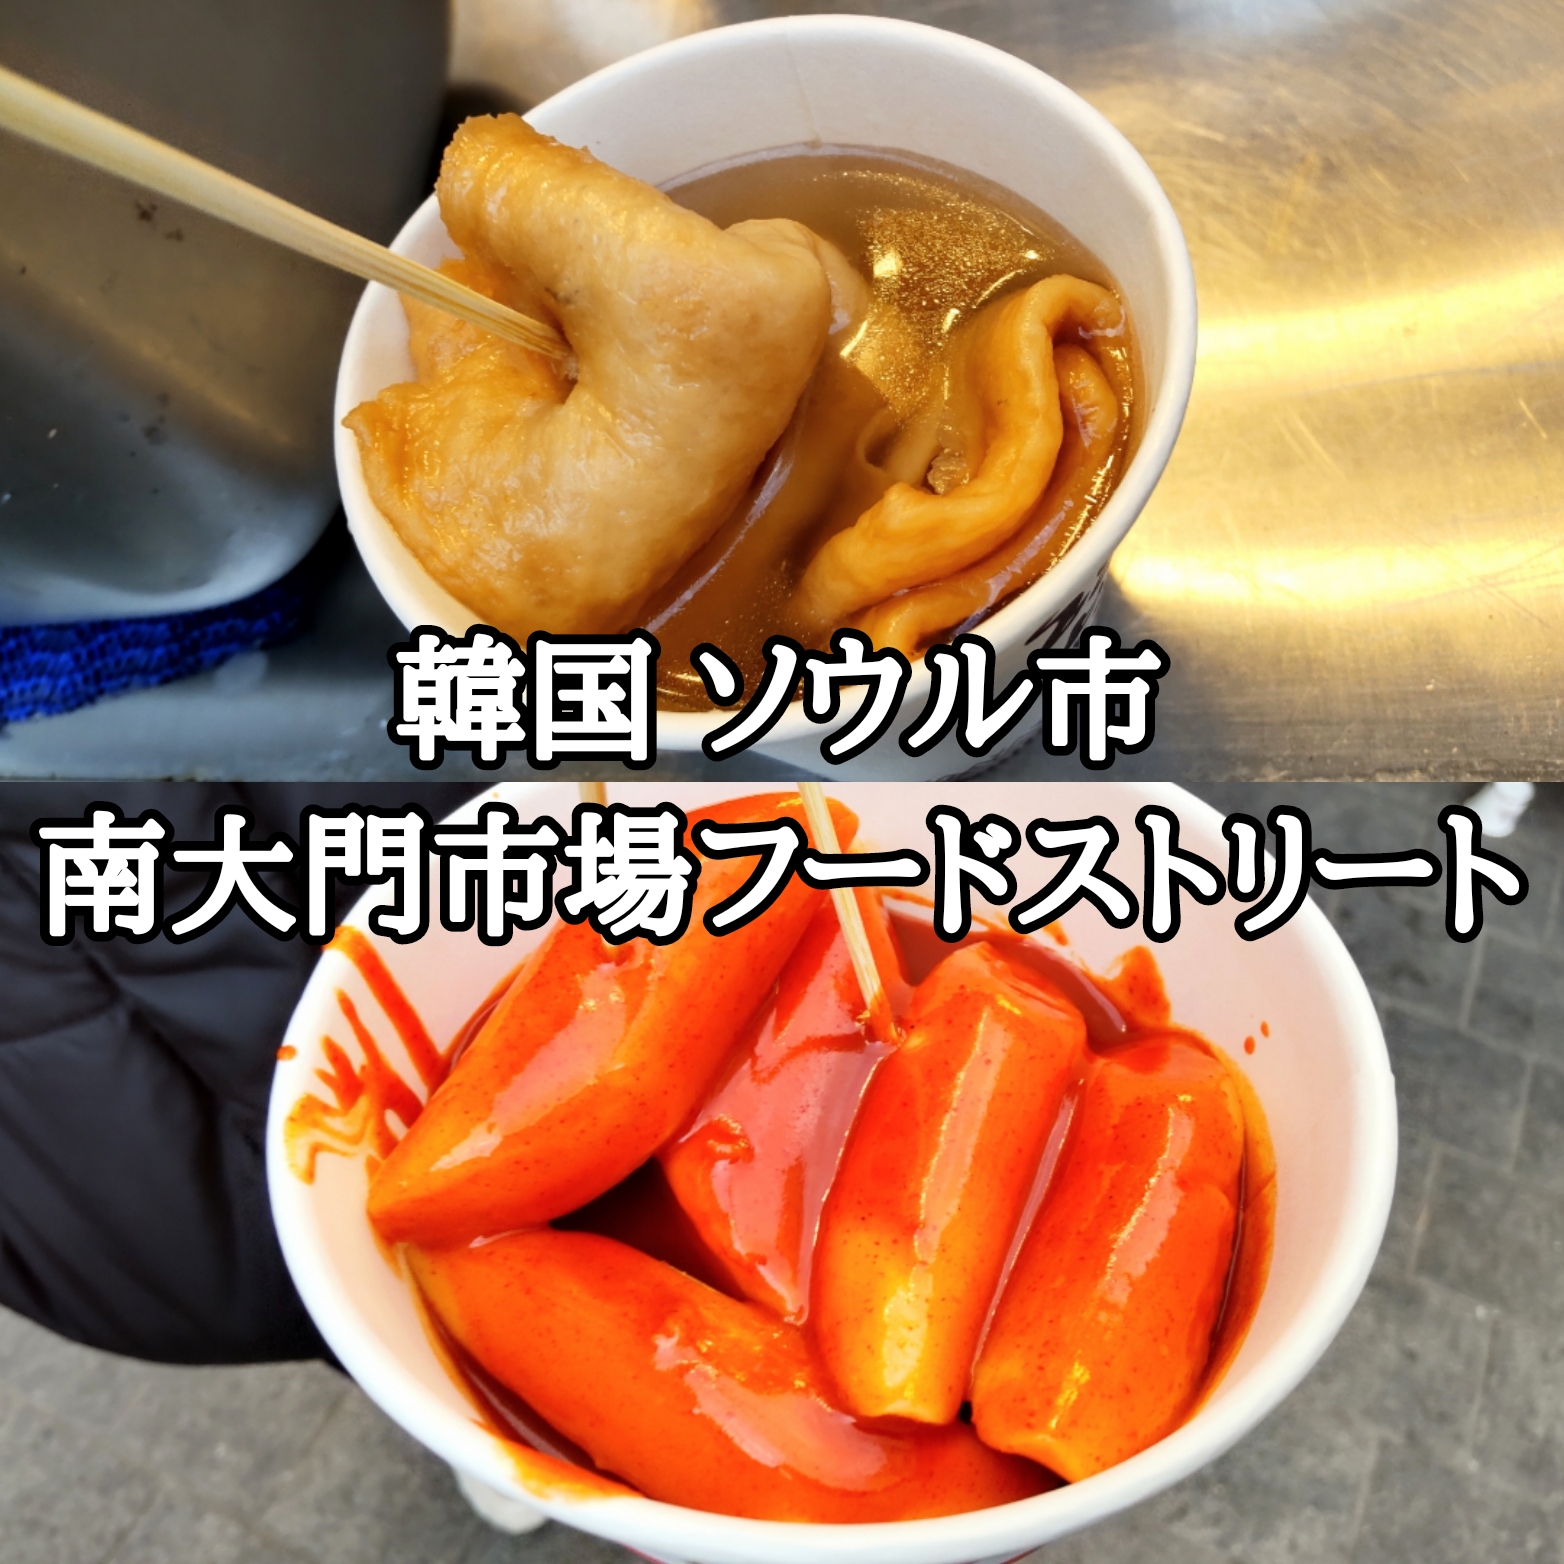 【韓国】【ソウル市】【中区】「南大門市場」南大門市場フードストリートの屋台でトッポギとおでんを食べてみました